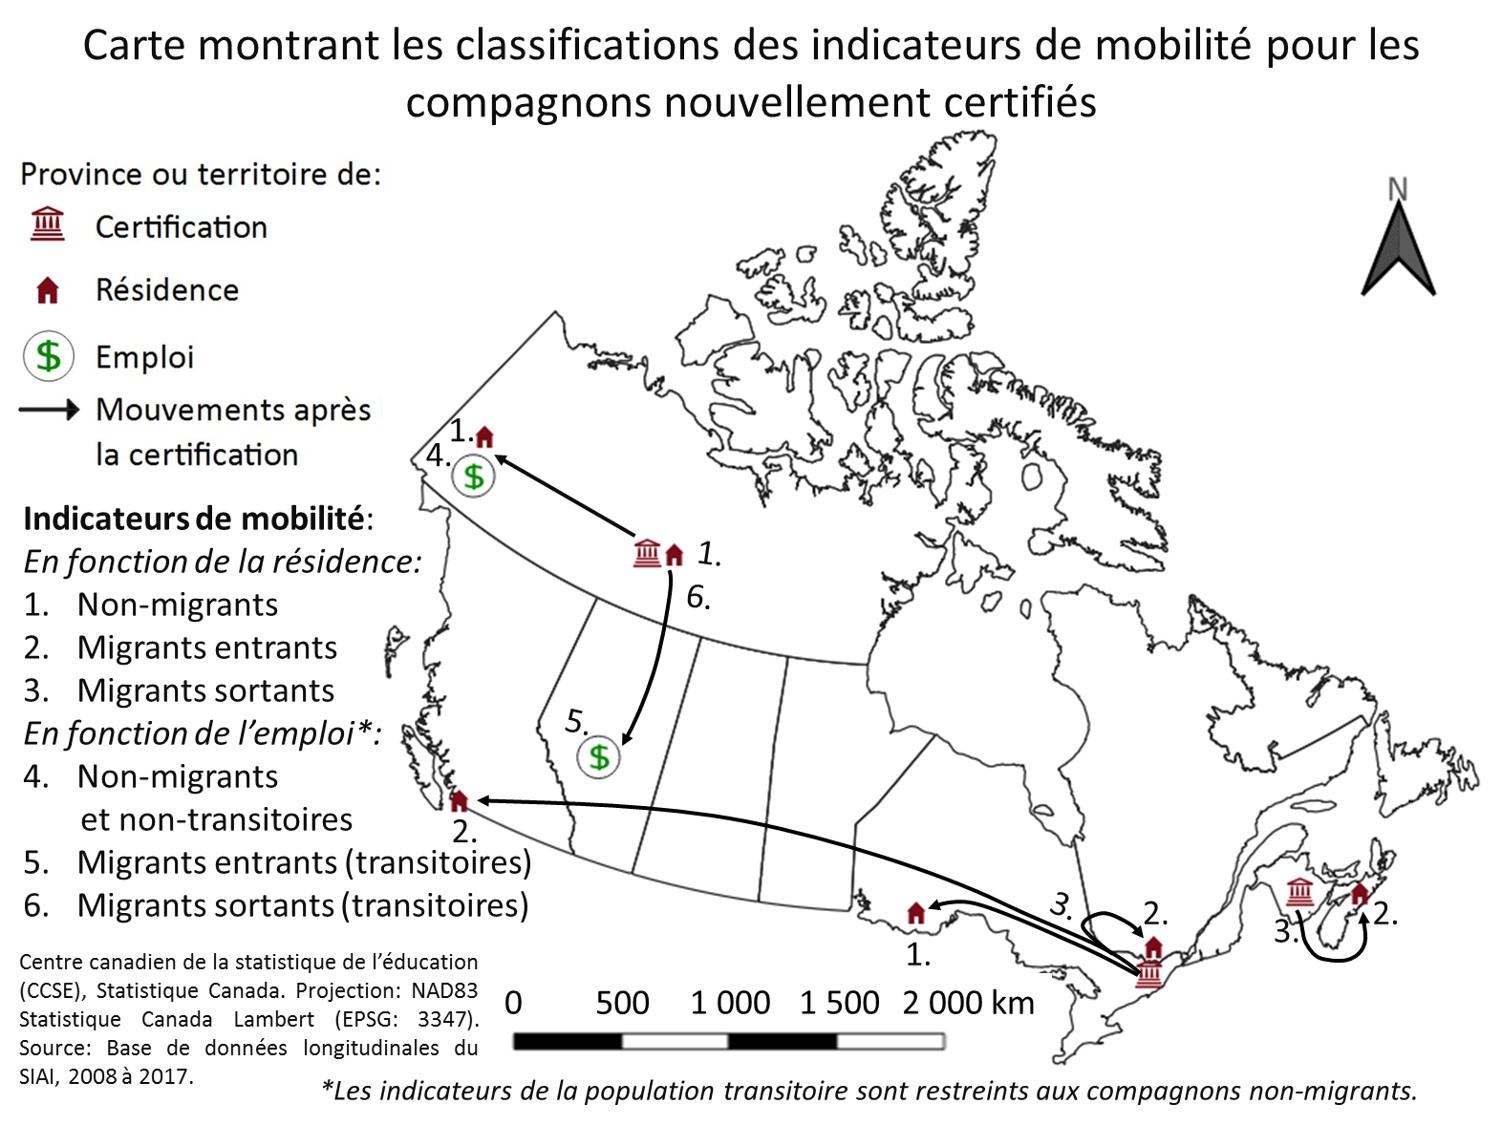 Carte montrant les classifications des indicateurs de mobilité des compagnons nouvellement certifiés